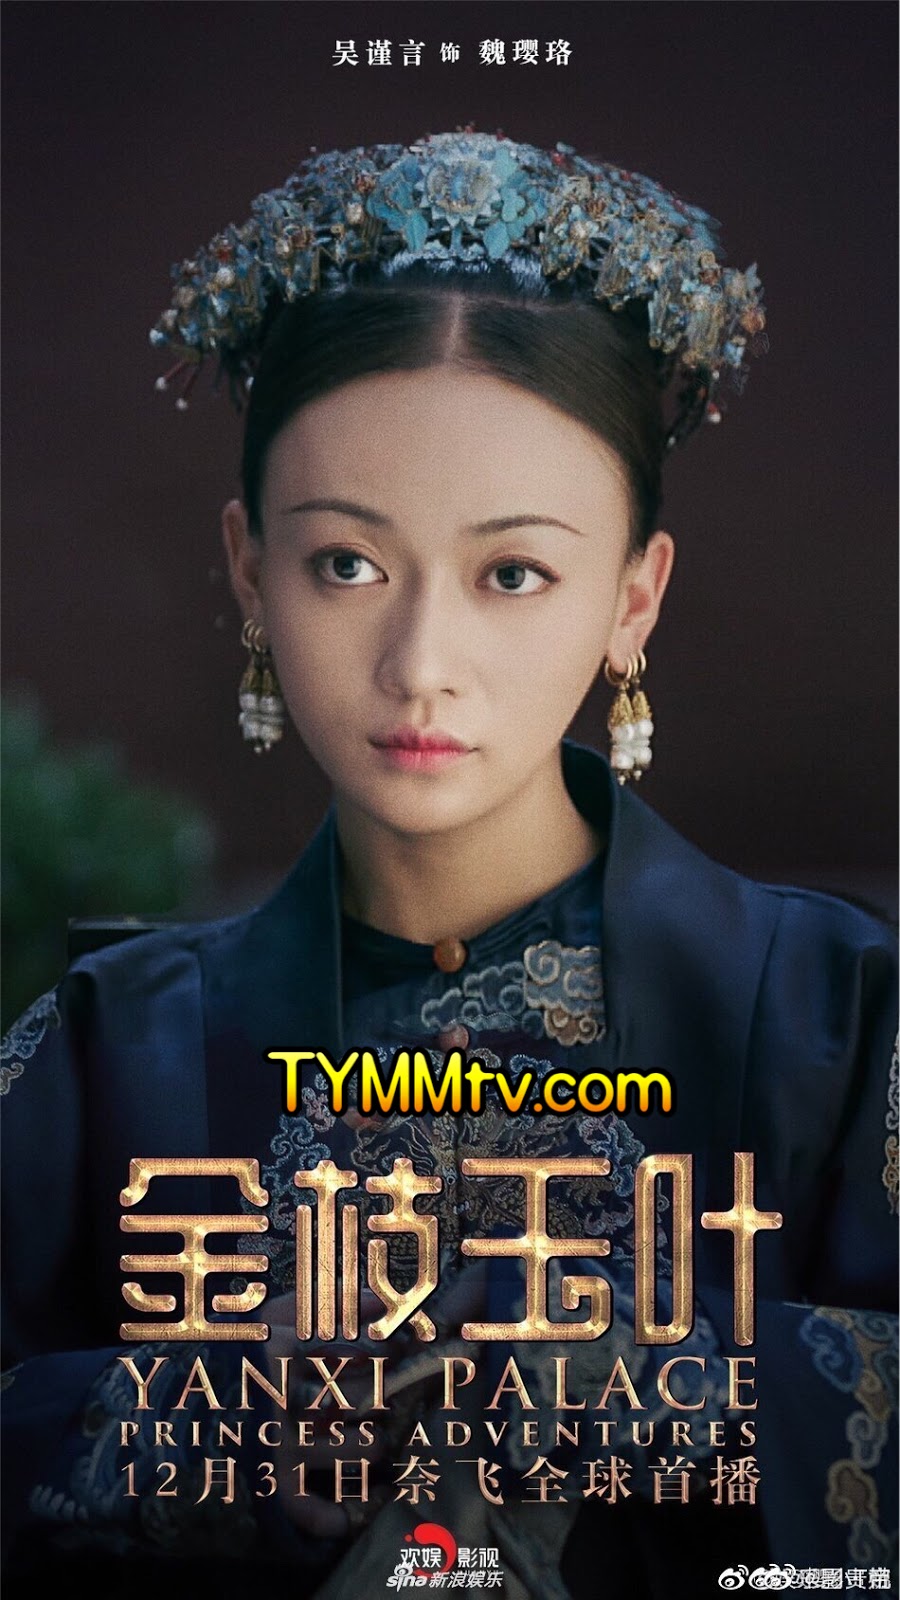 Дворец Яньси: приключения принцессы. Yanxi Palace прически. Дворец Яньси продолжение. Wu Jin Yan.